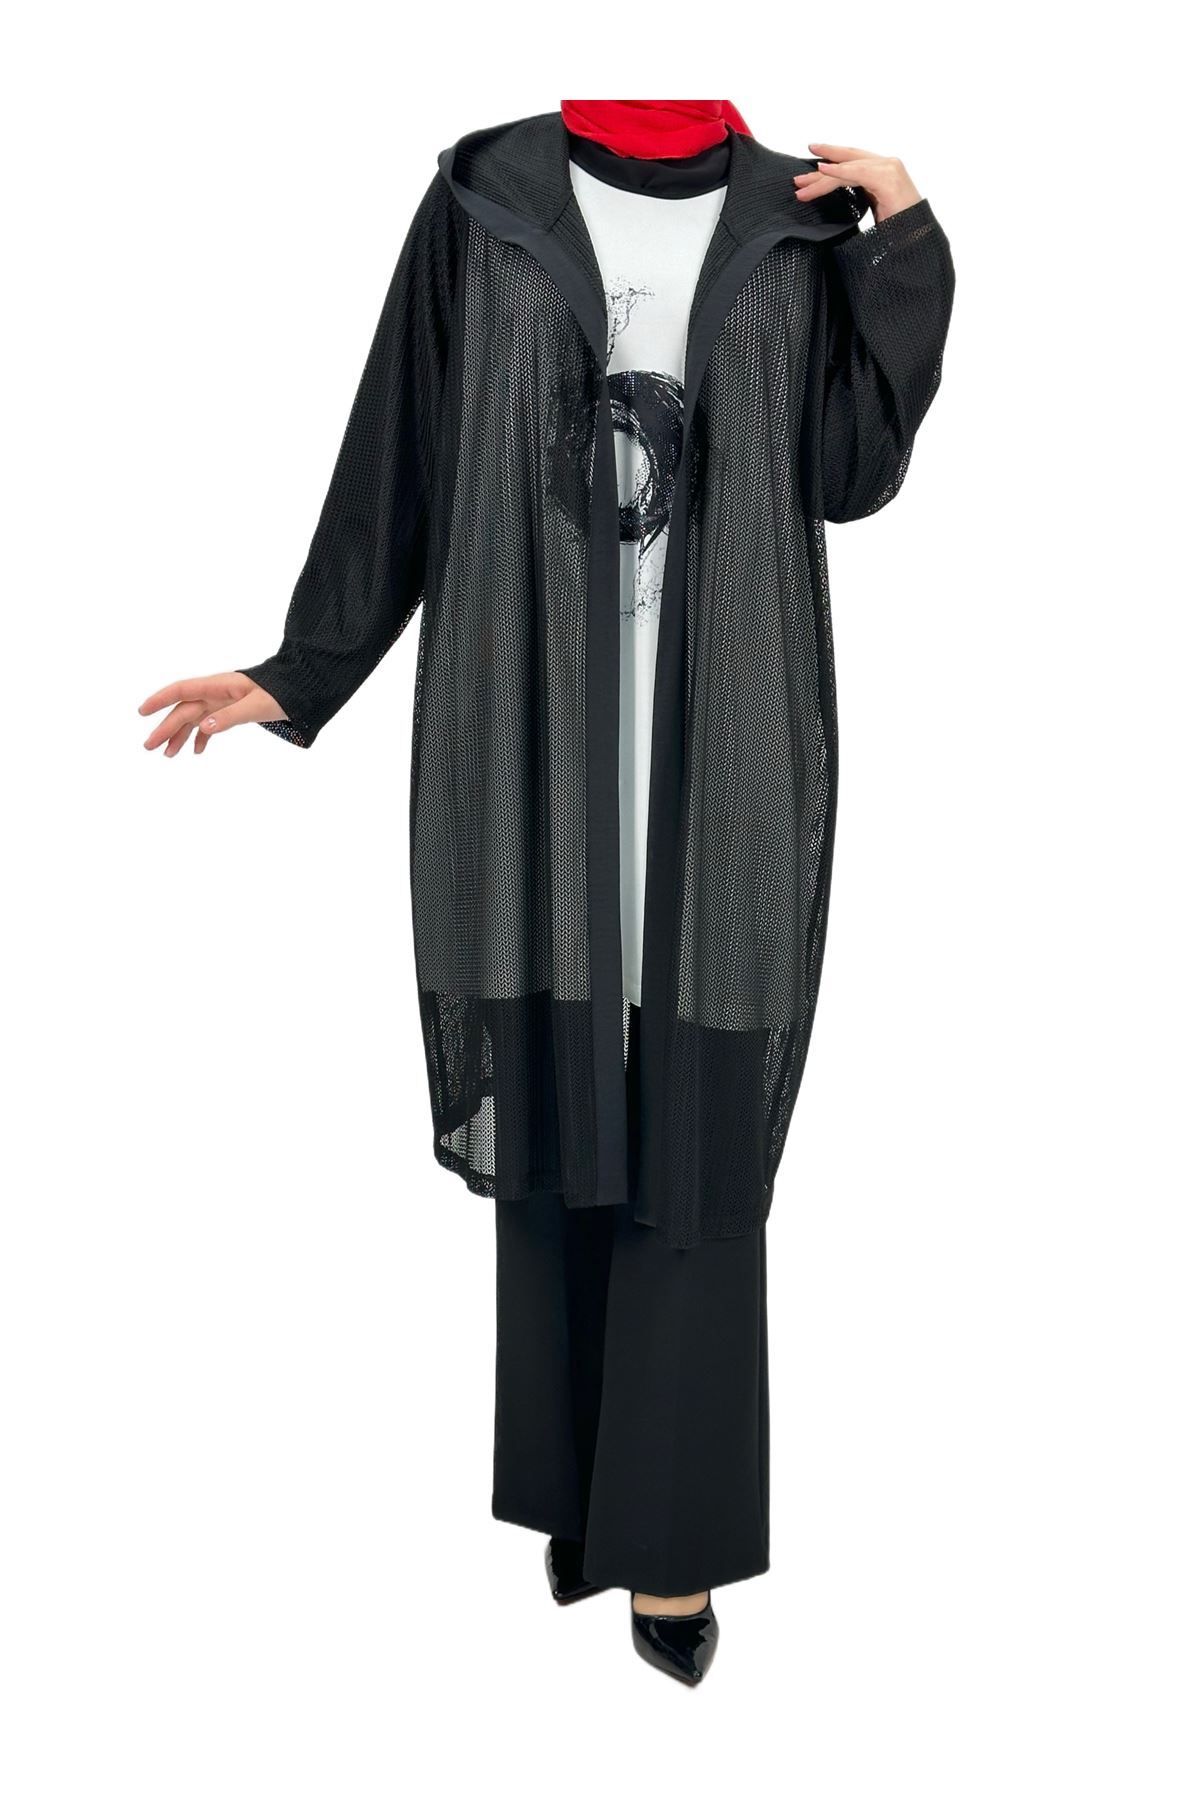 ottoman wear OTW60274 Fileli Ceketli Takım Siyah